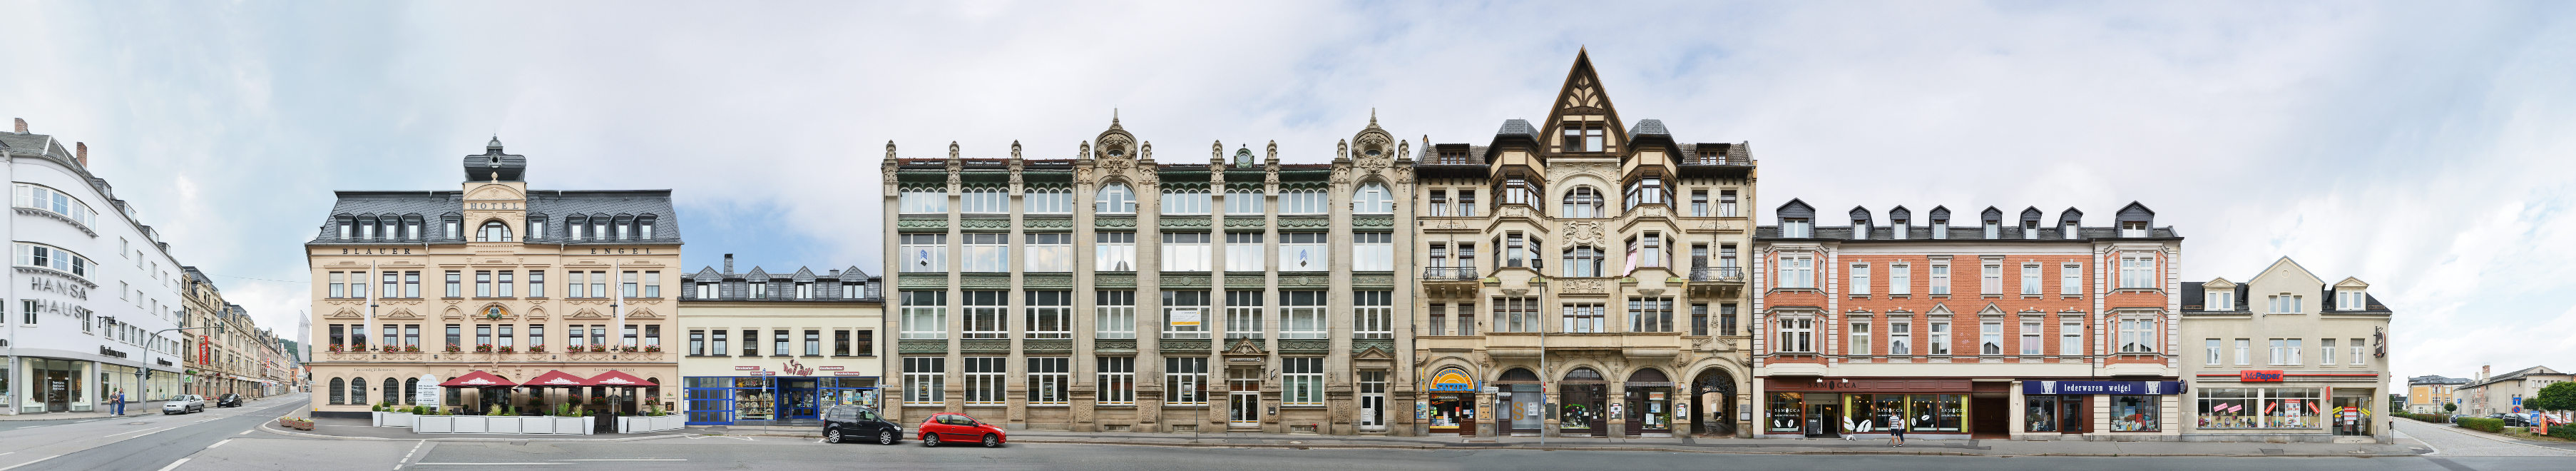 Aue Erzgebirge Straßenzug Fassaden Architektur Fotografie